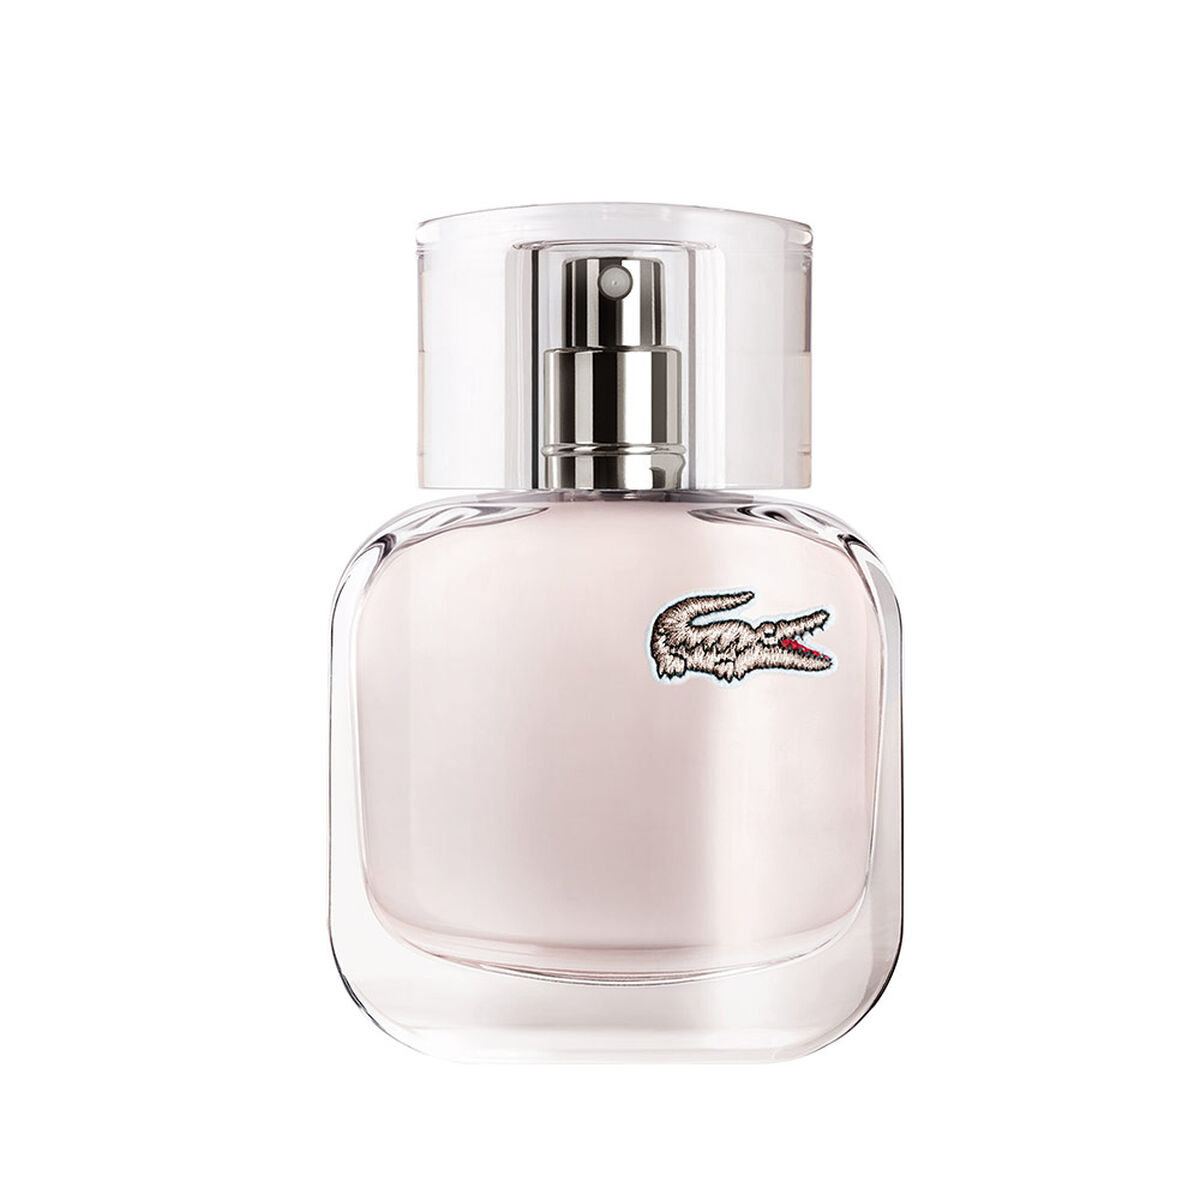 Perfume Lacoste L.12.12 Pour elle elegant EDT 30 ml